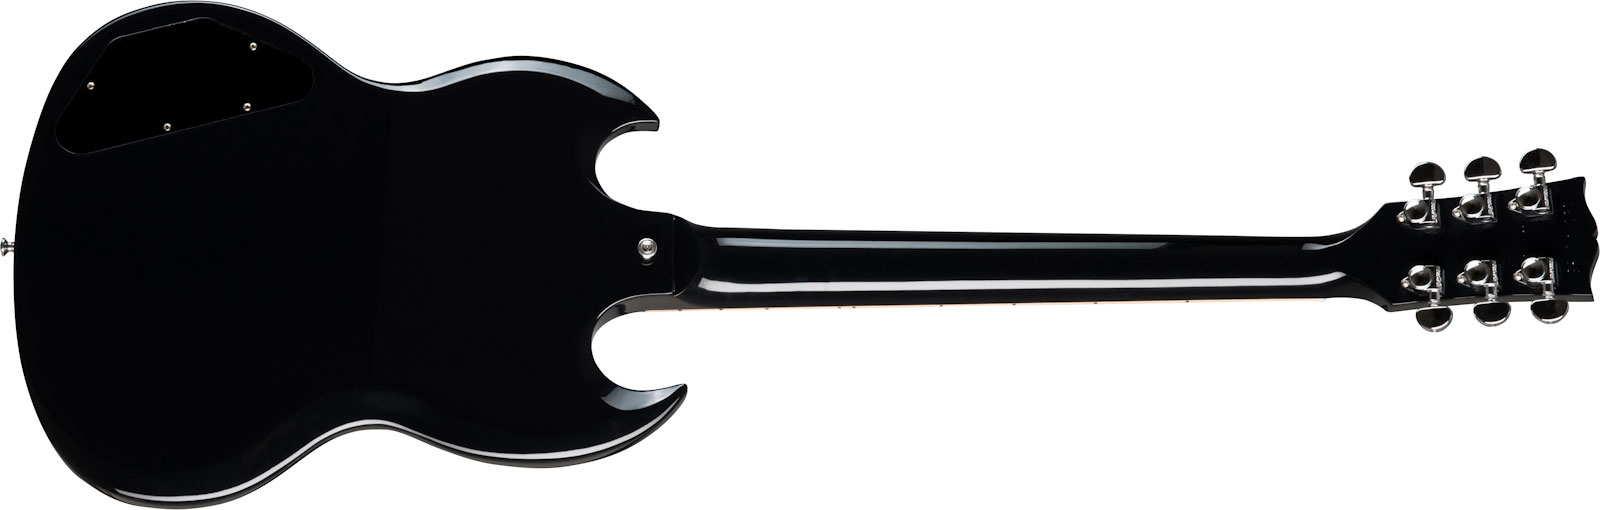 Gibson Sg Standard 2h Ht Rw - Ebony - Guitare Électrique Double Cut - Variation 1